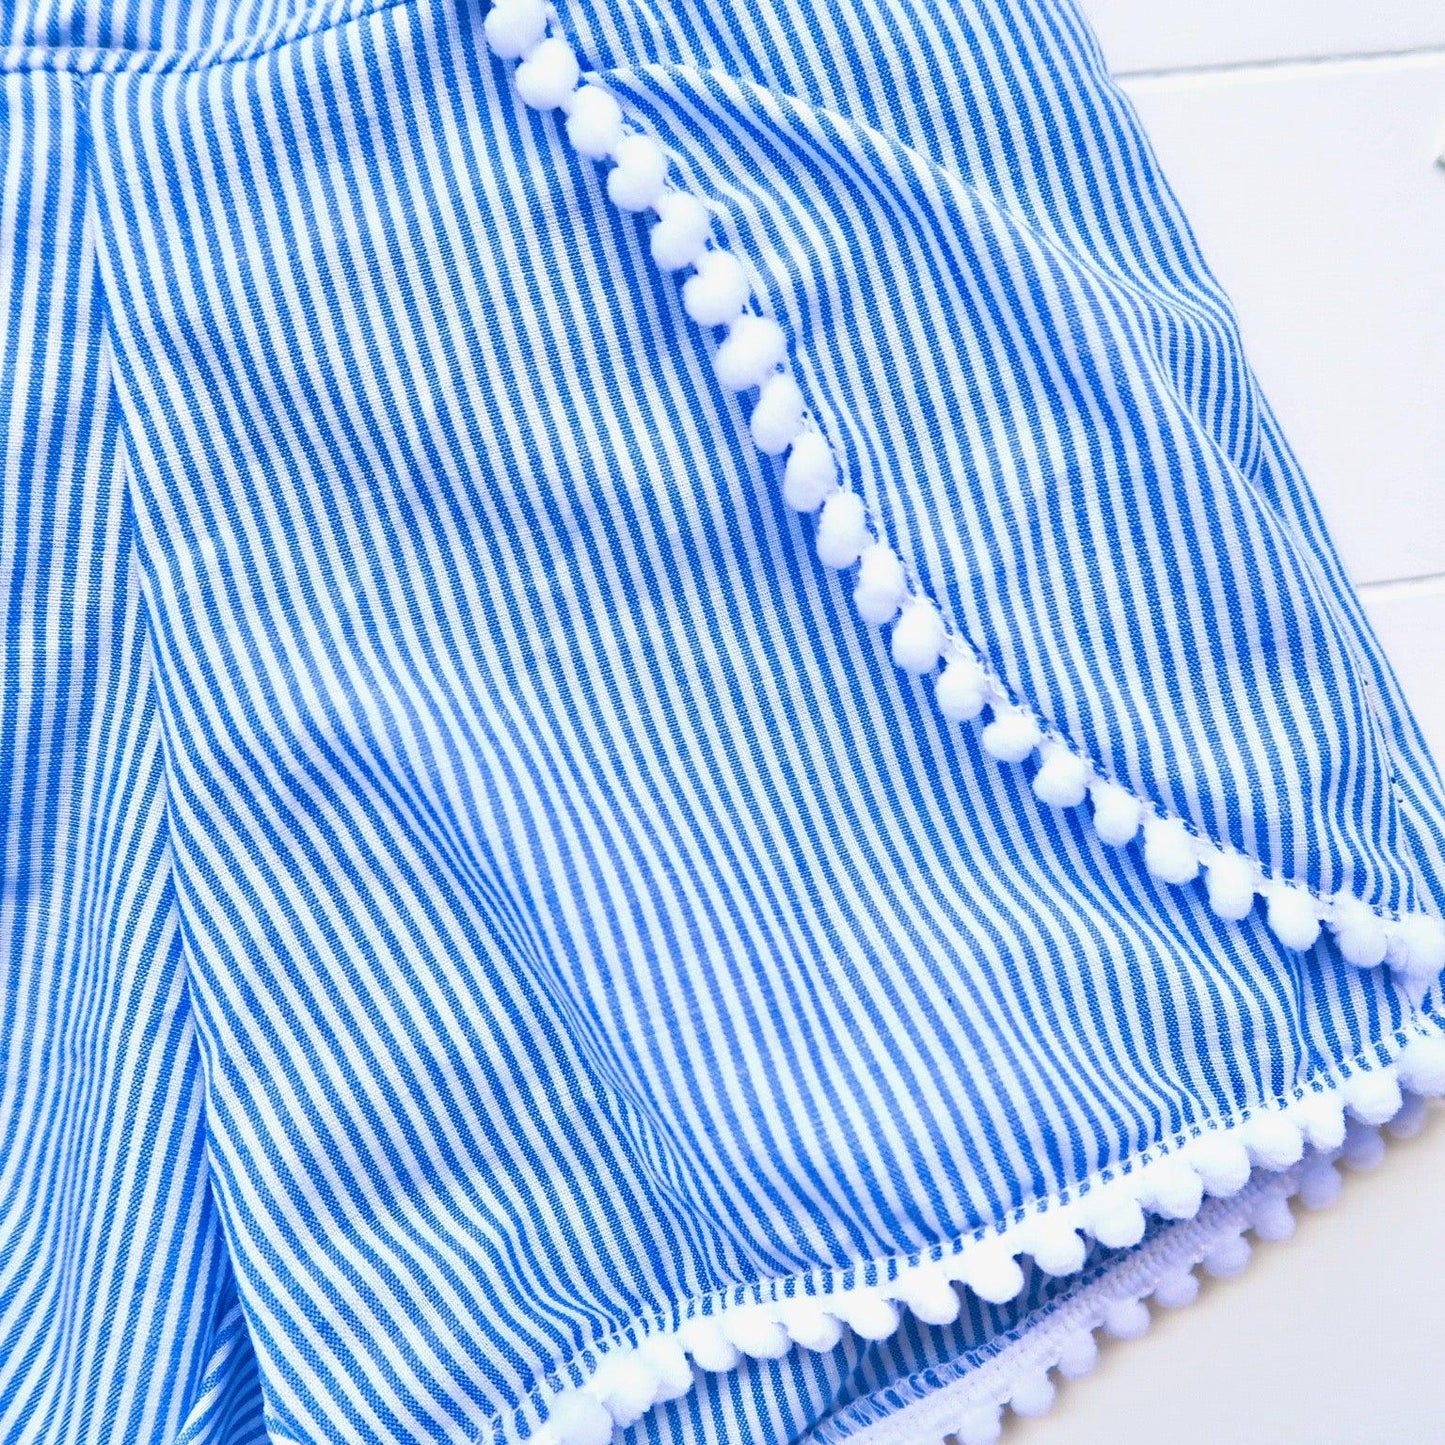 Pompom Shorts in Blue Pinstripes - Lil' Tati